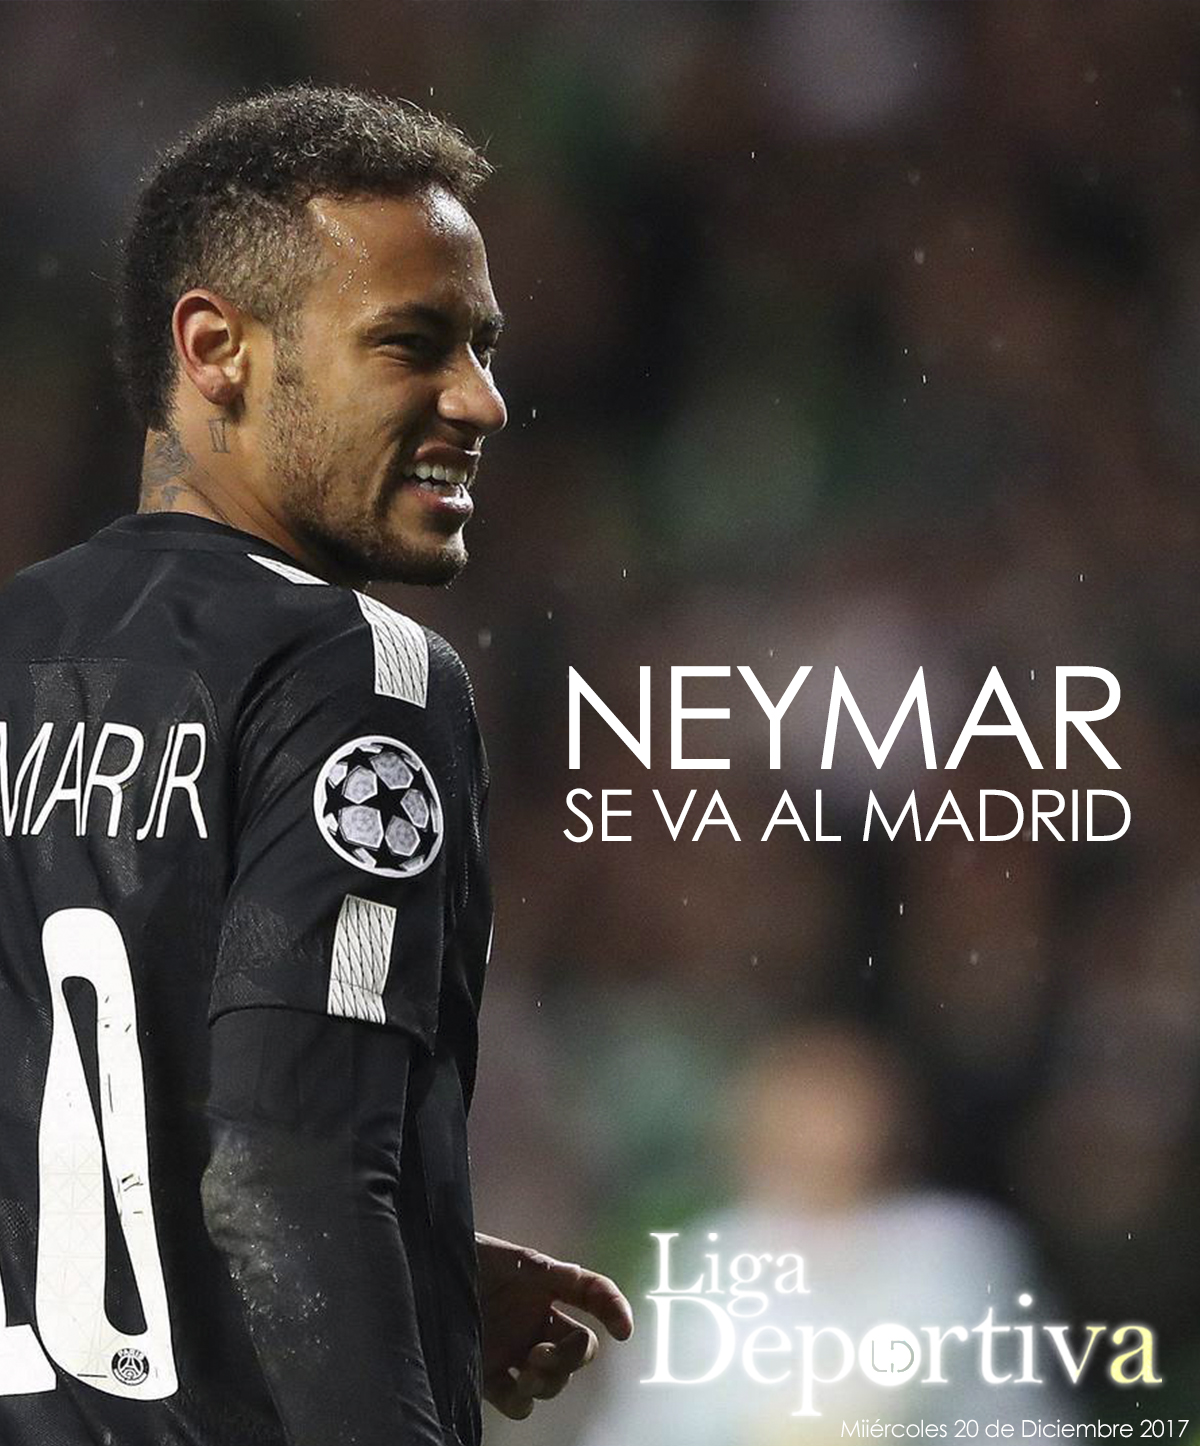 ¡BOMBA! Neymar se va al Real Madrid 